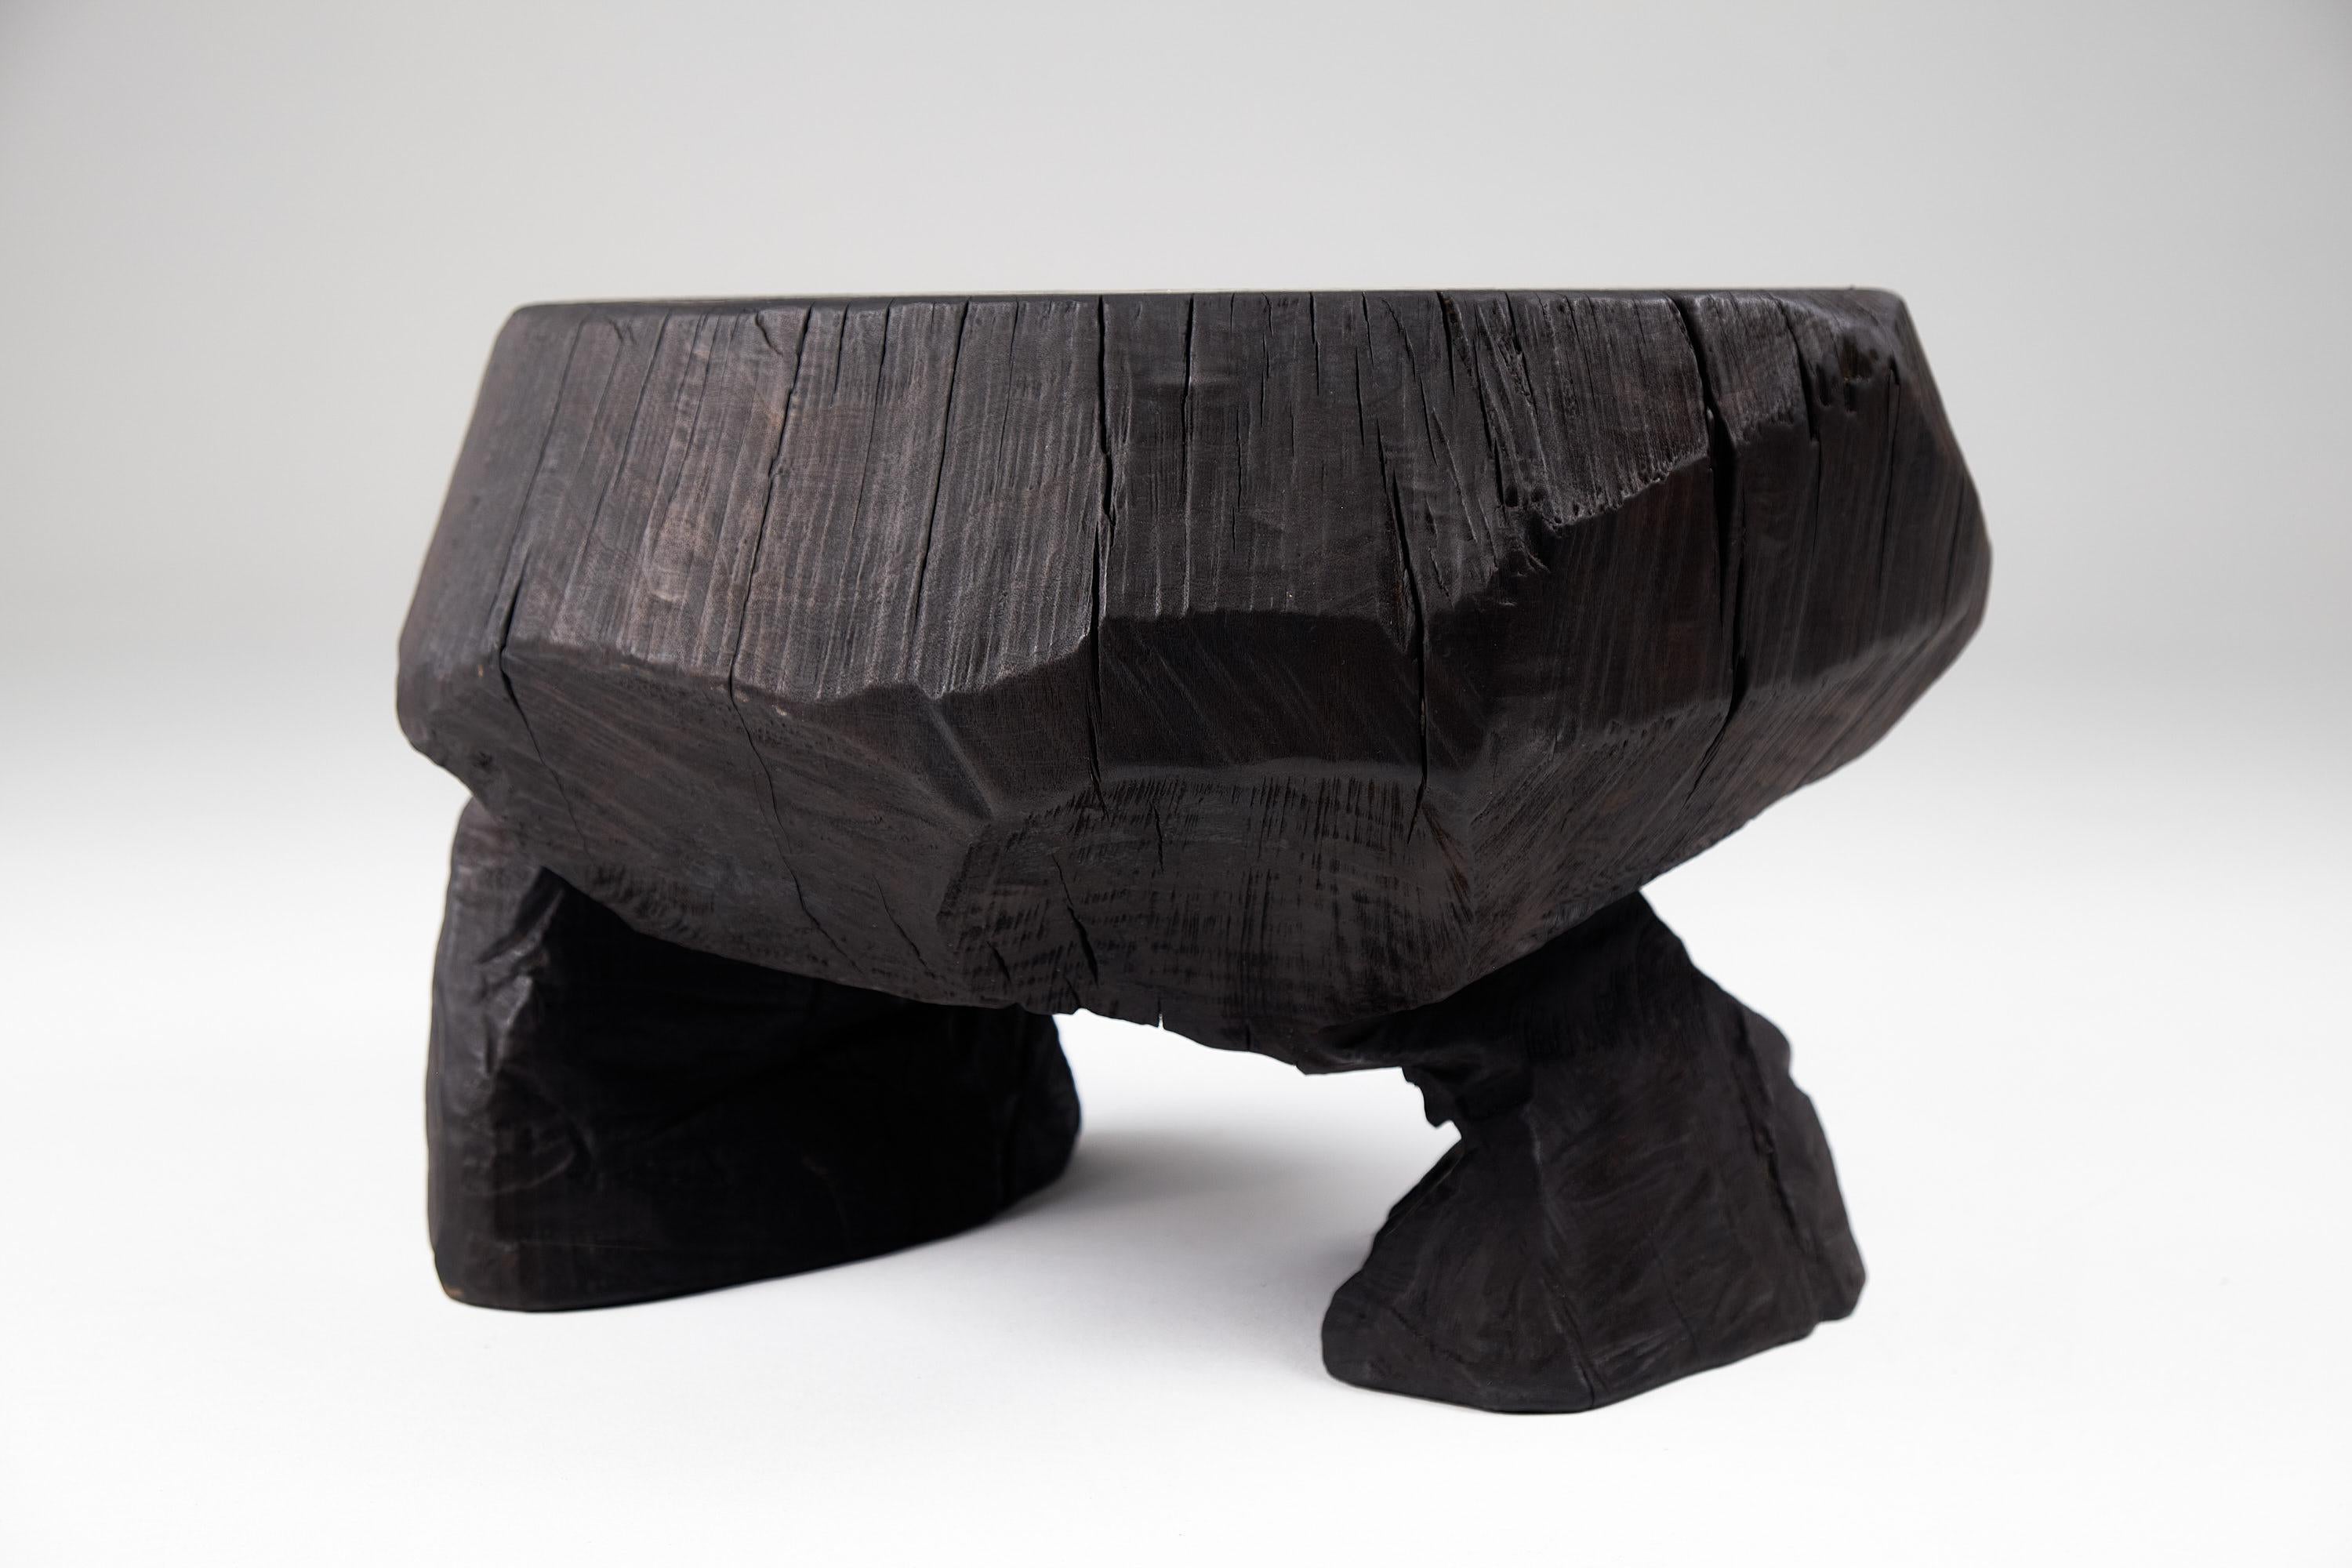 Solid Burnt Wood, Brutalist Sculptural Stool/Side Table,  Unique, Original 1/1 For Sale 6